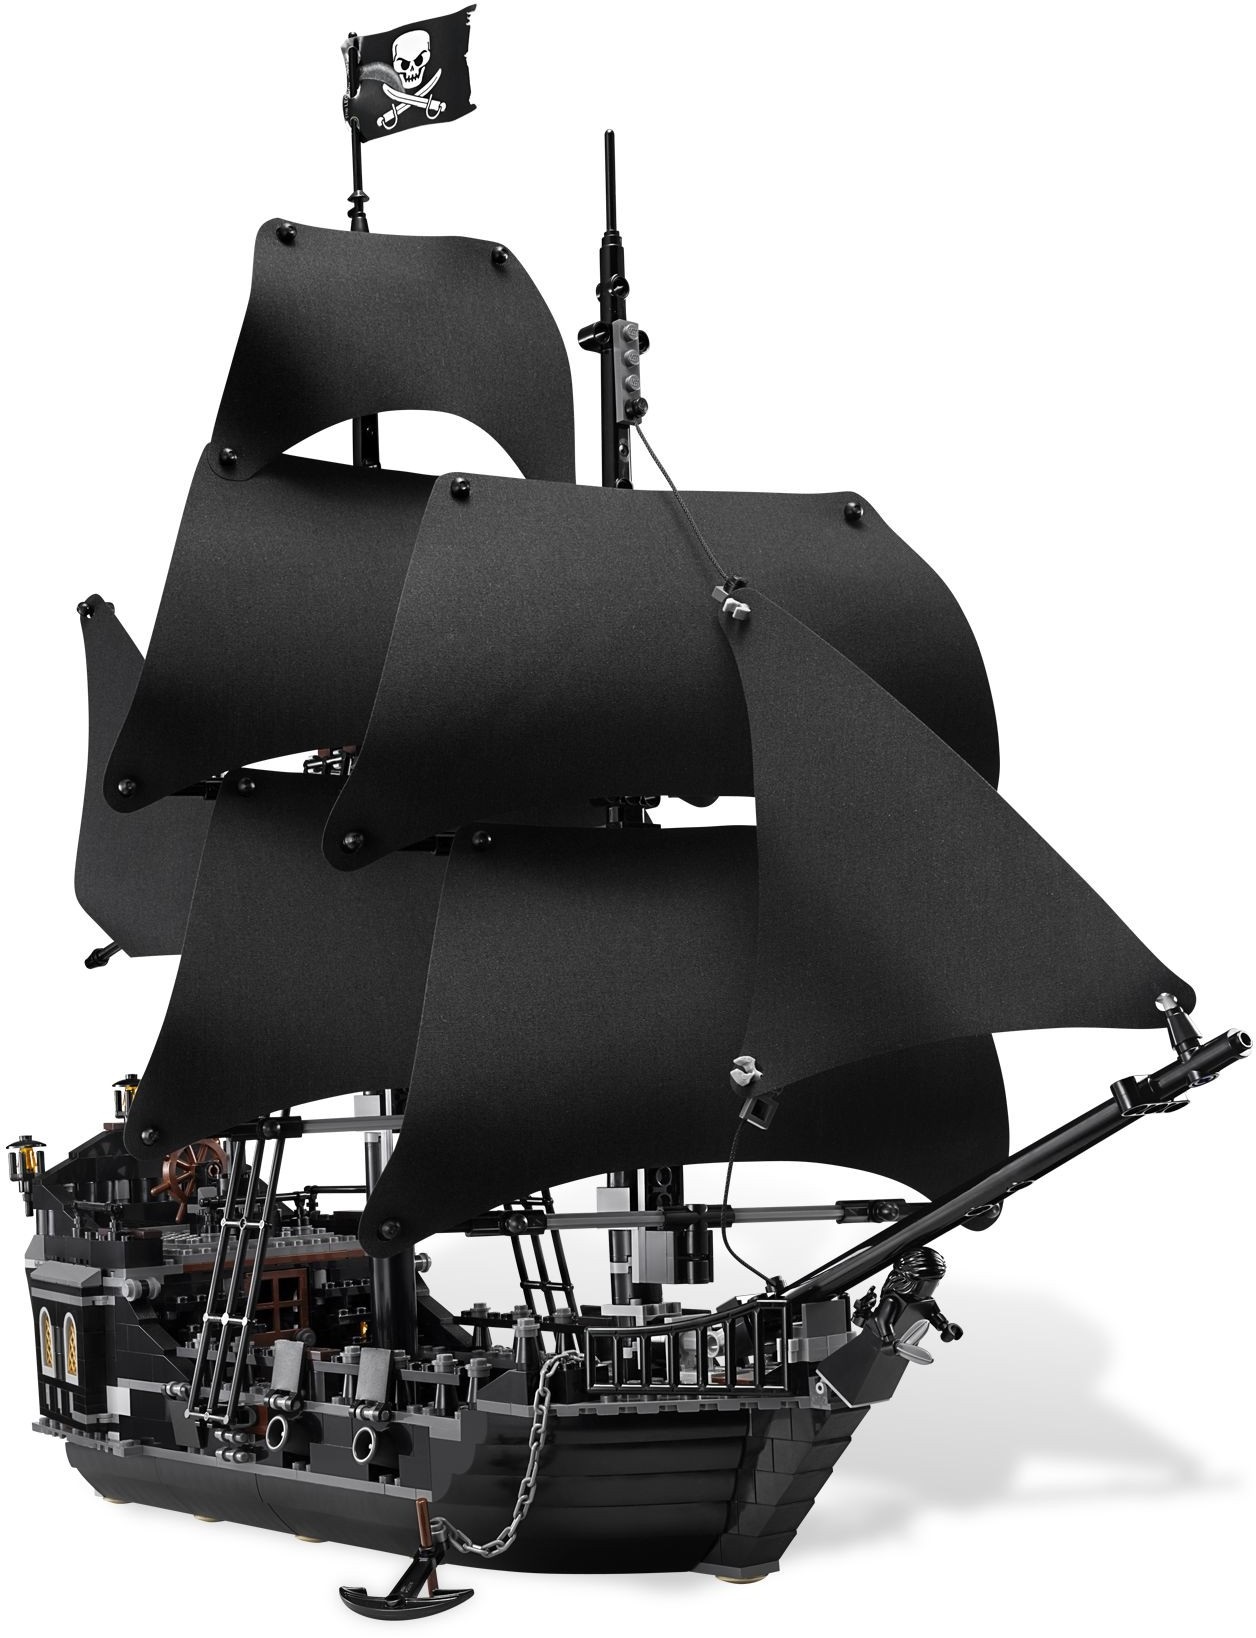 LEGO PIRATAS DAS CARAÍBAS - The Black Pearl - 4184